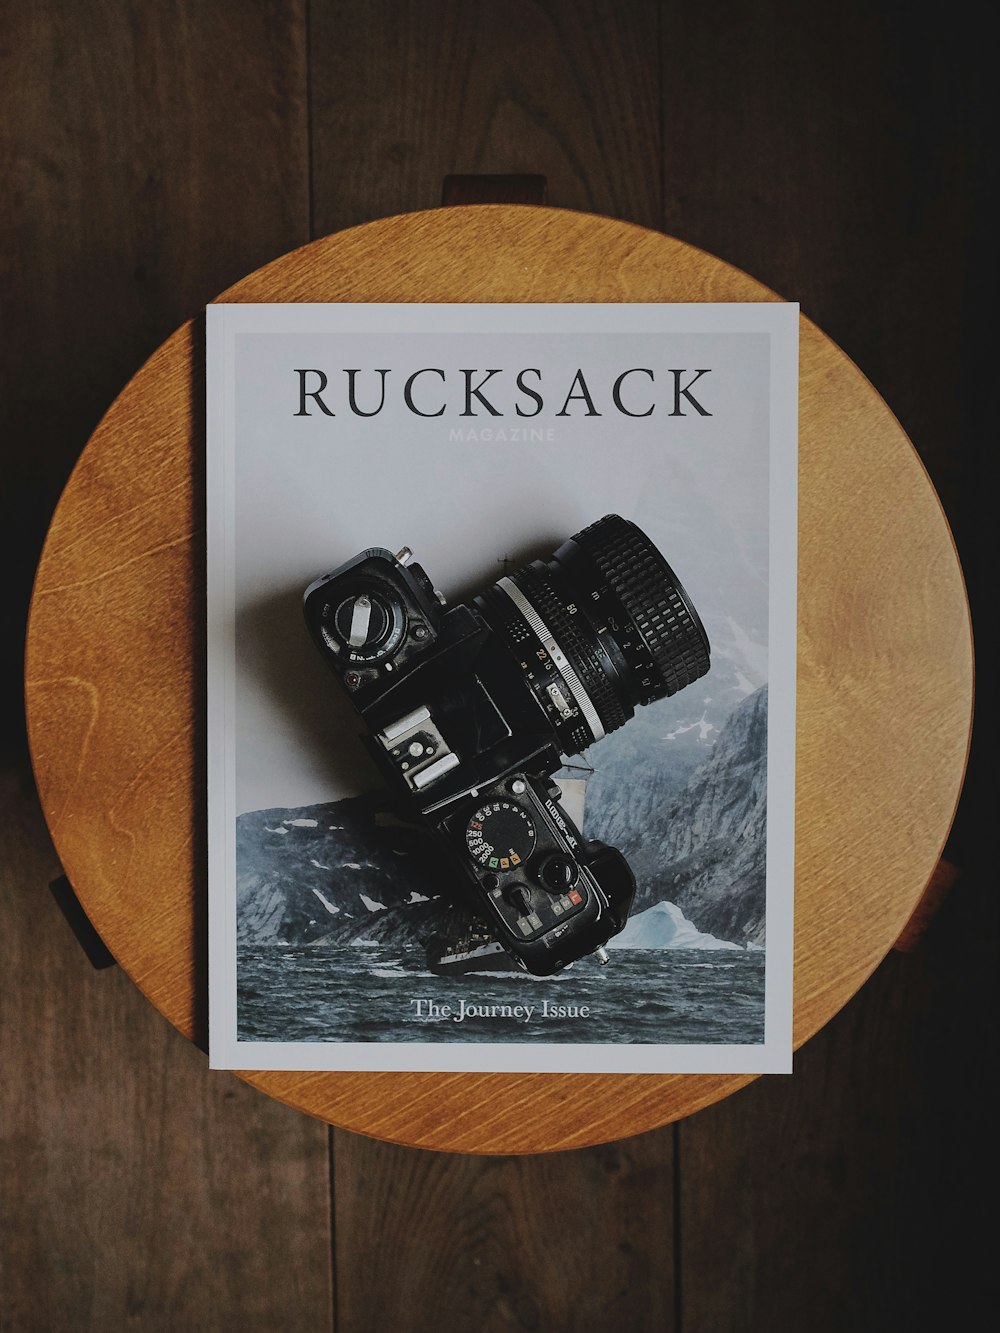 câmera DSLR preta no livro Rucksack